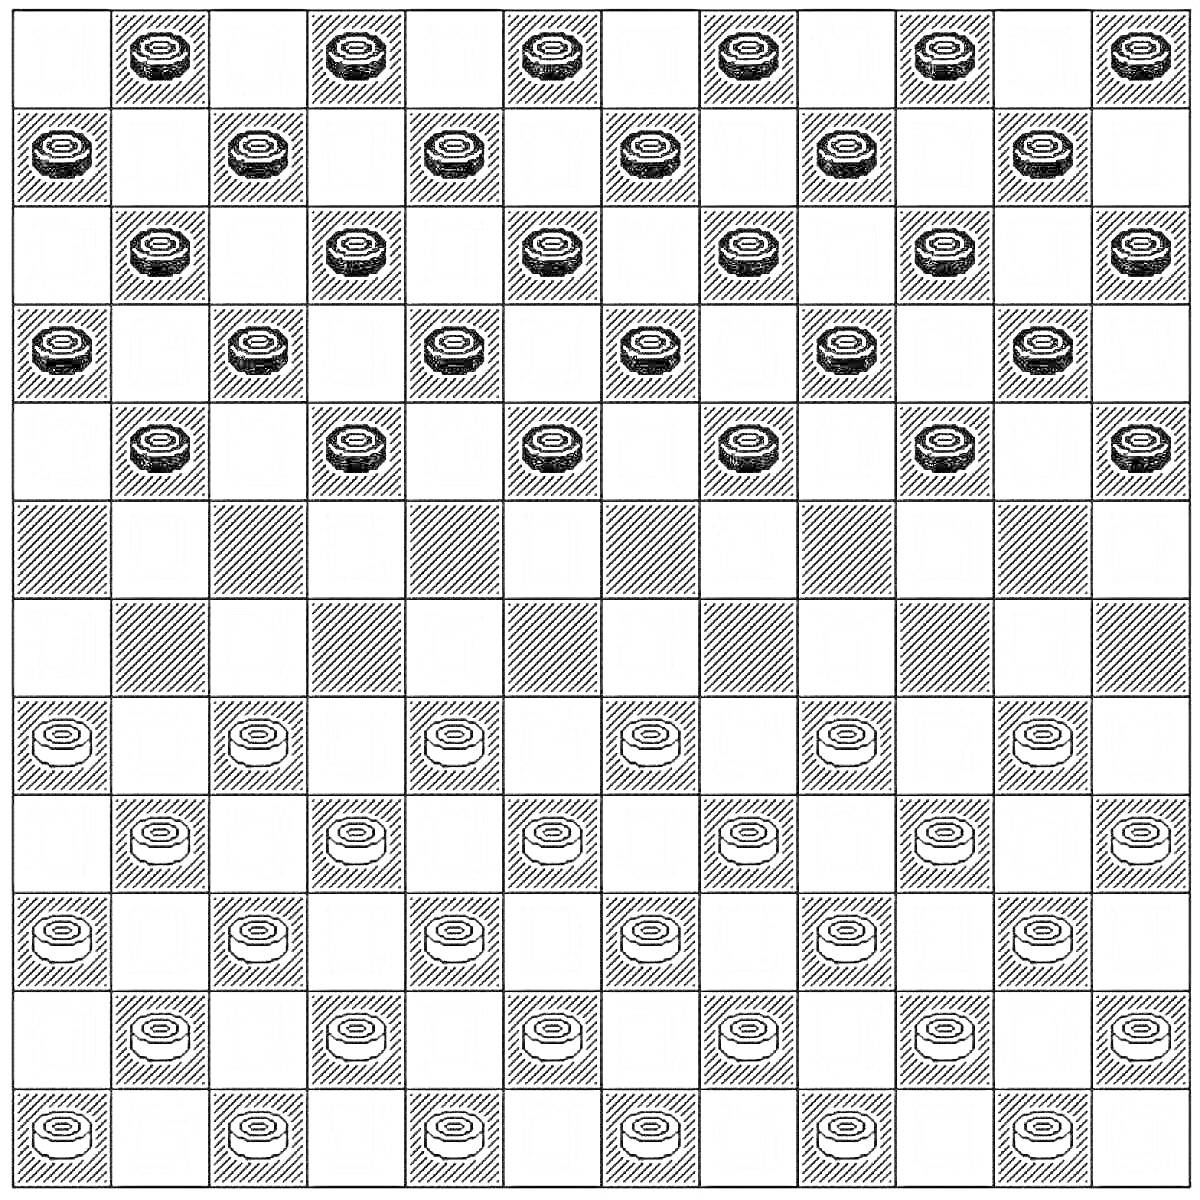 Шашечная доска с расставленными фигурами для игры в шашки